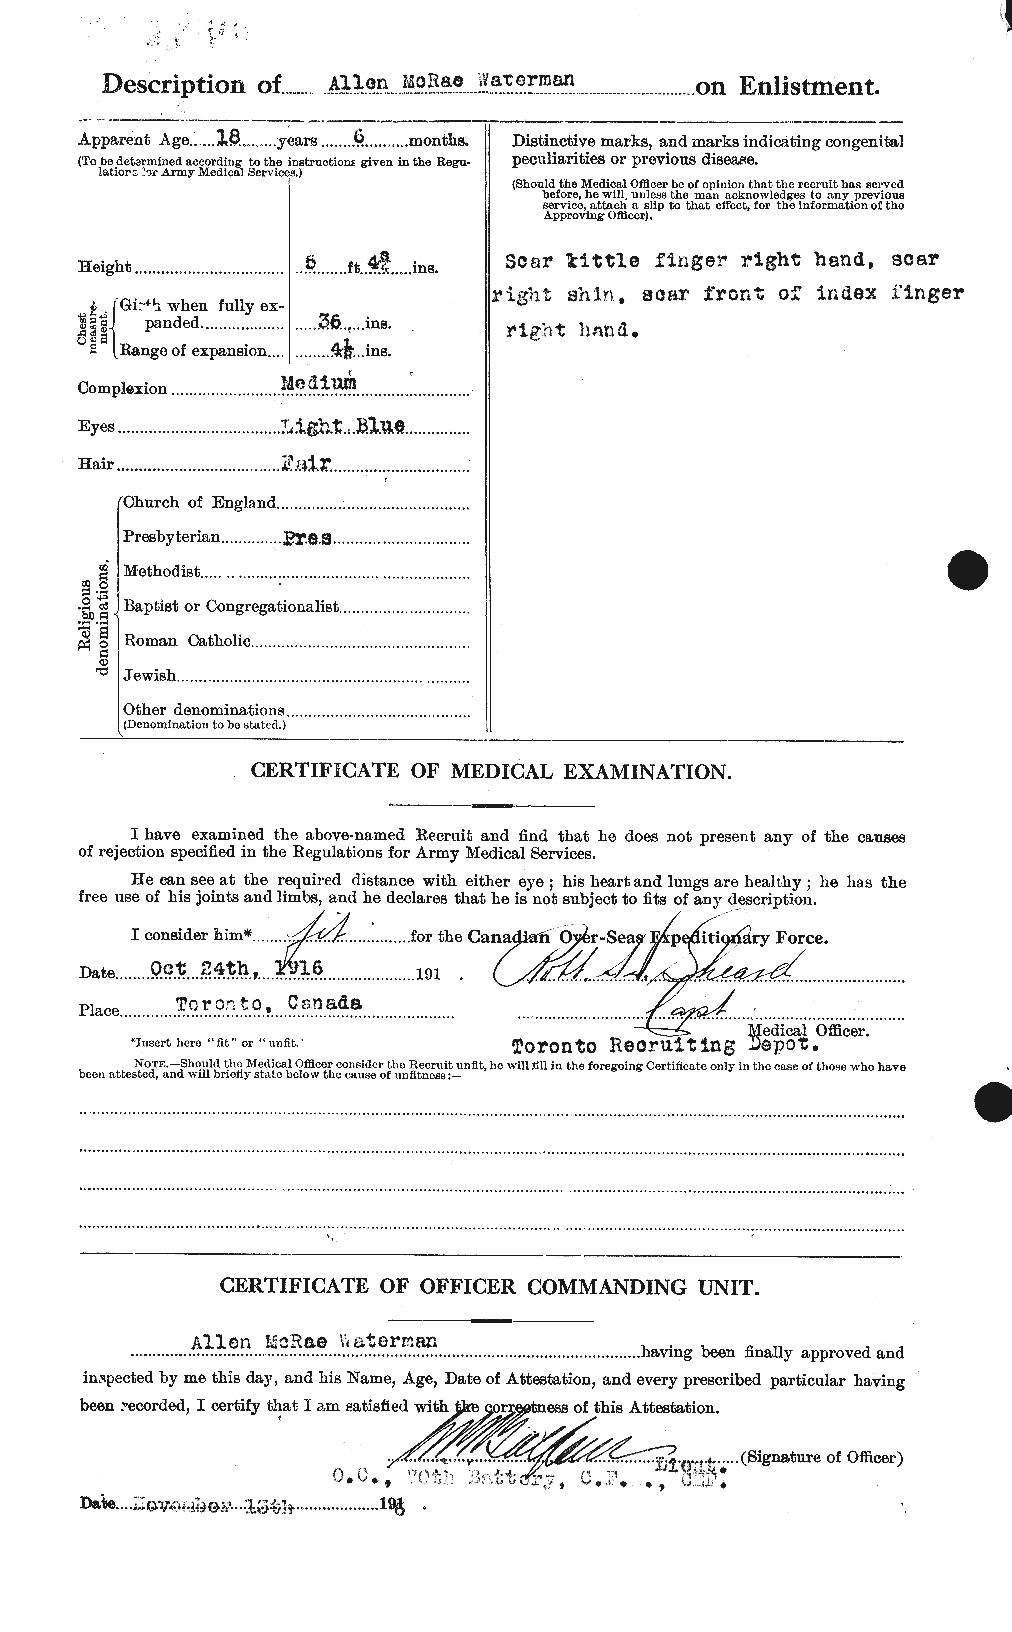 Dossiers du Personnel de la Première Guerre mondiale - CEC 658092b